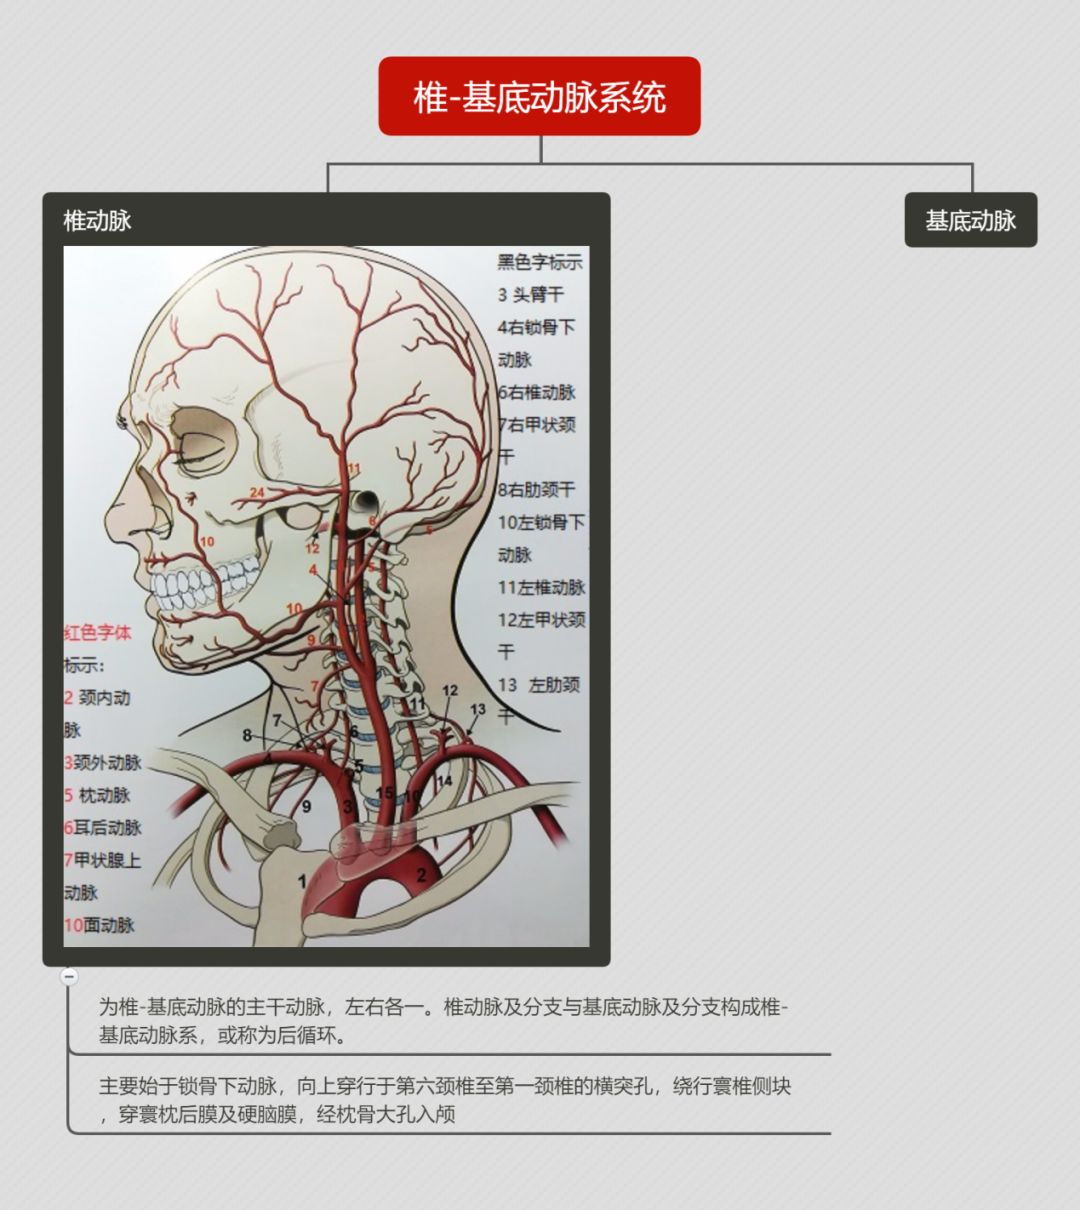 细说椎<font color="red">基底</font>动脉系统的解剖